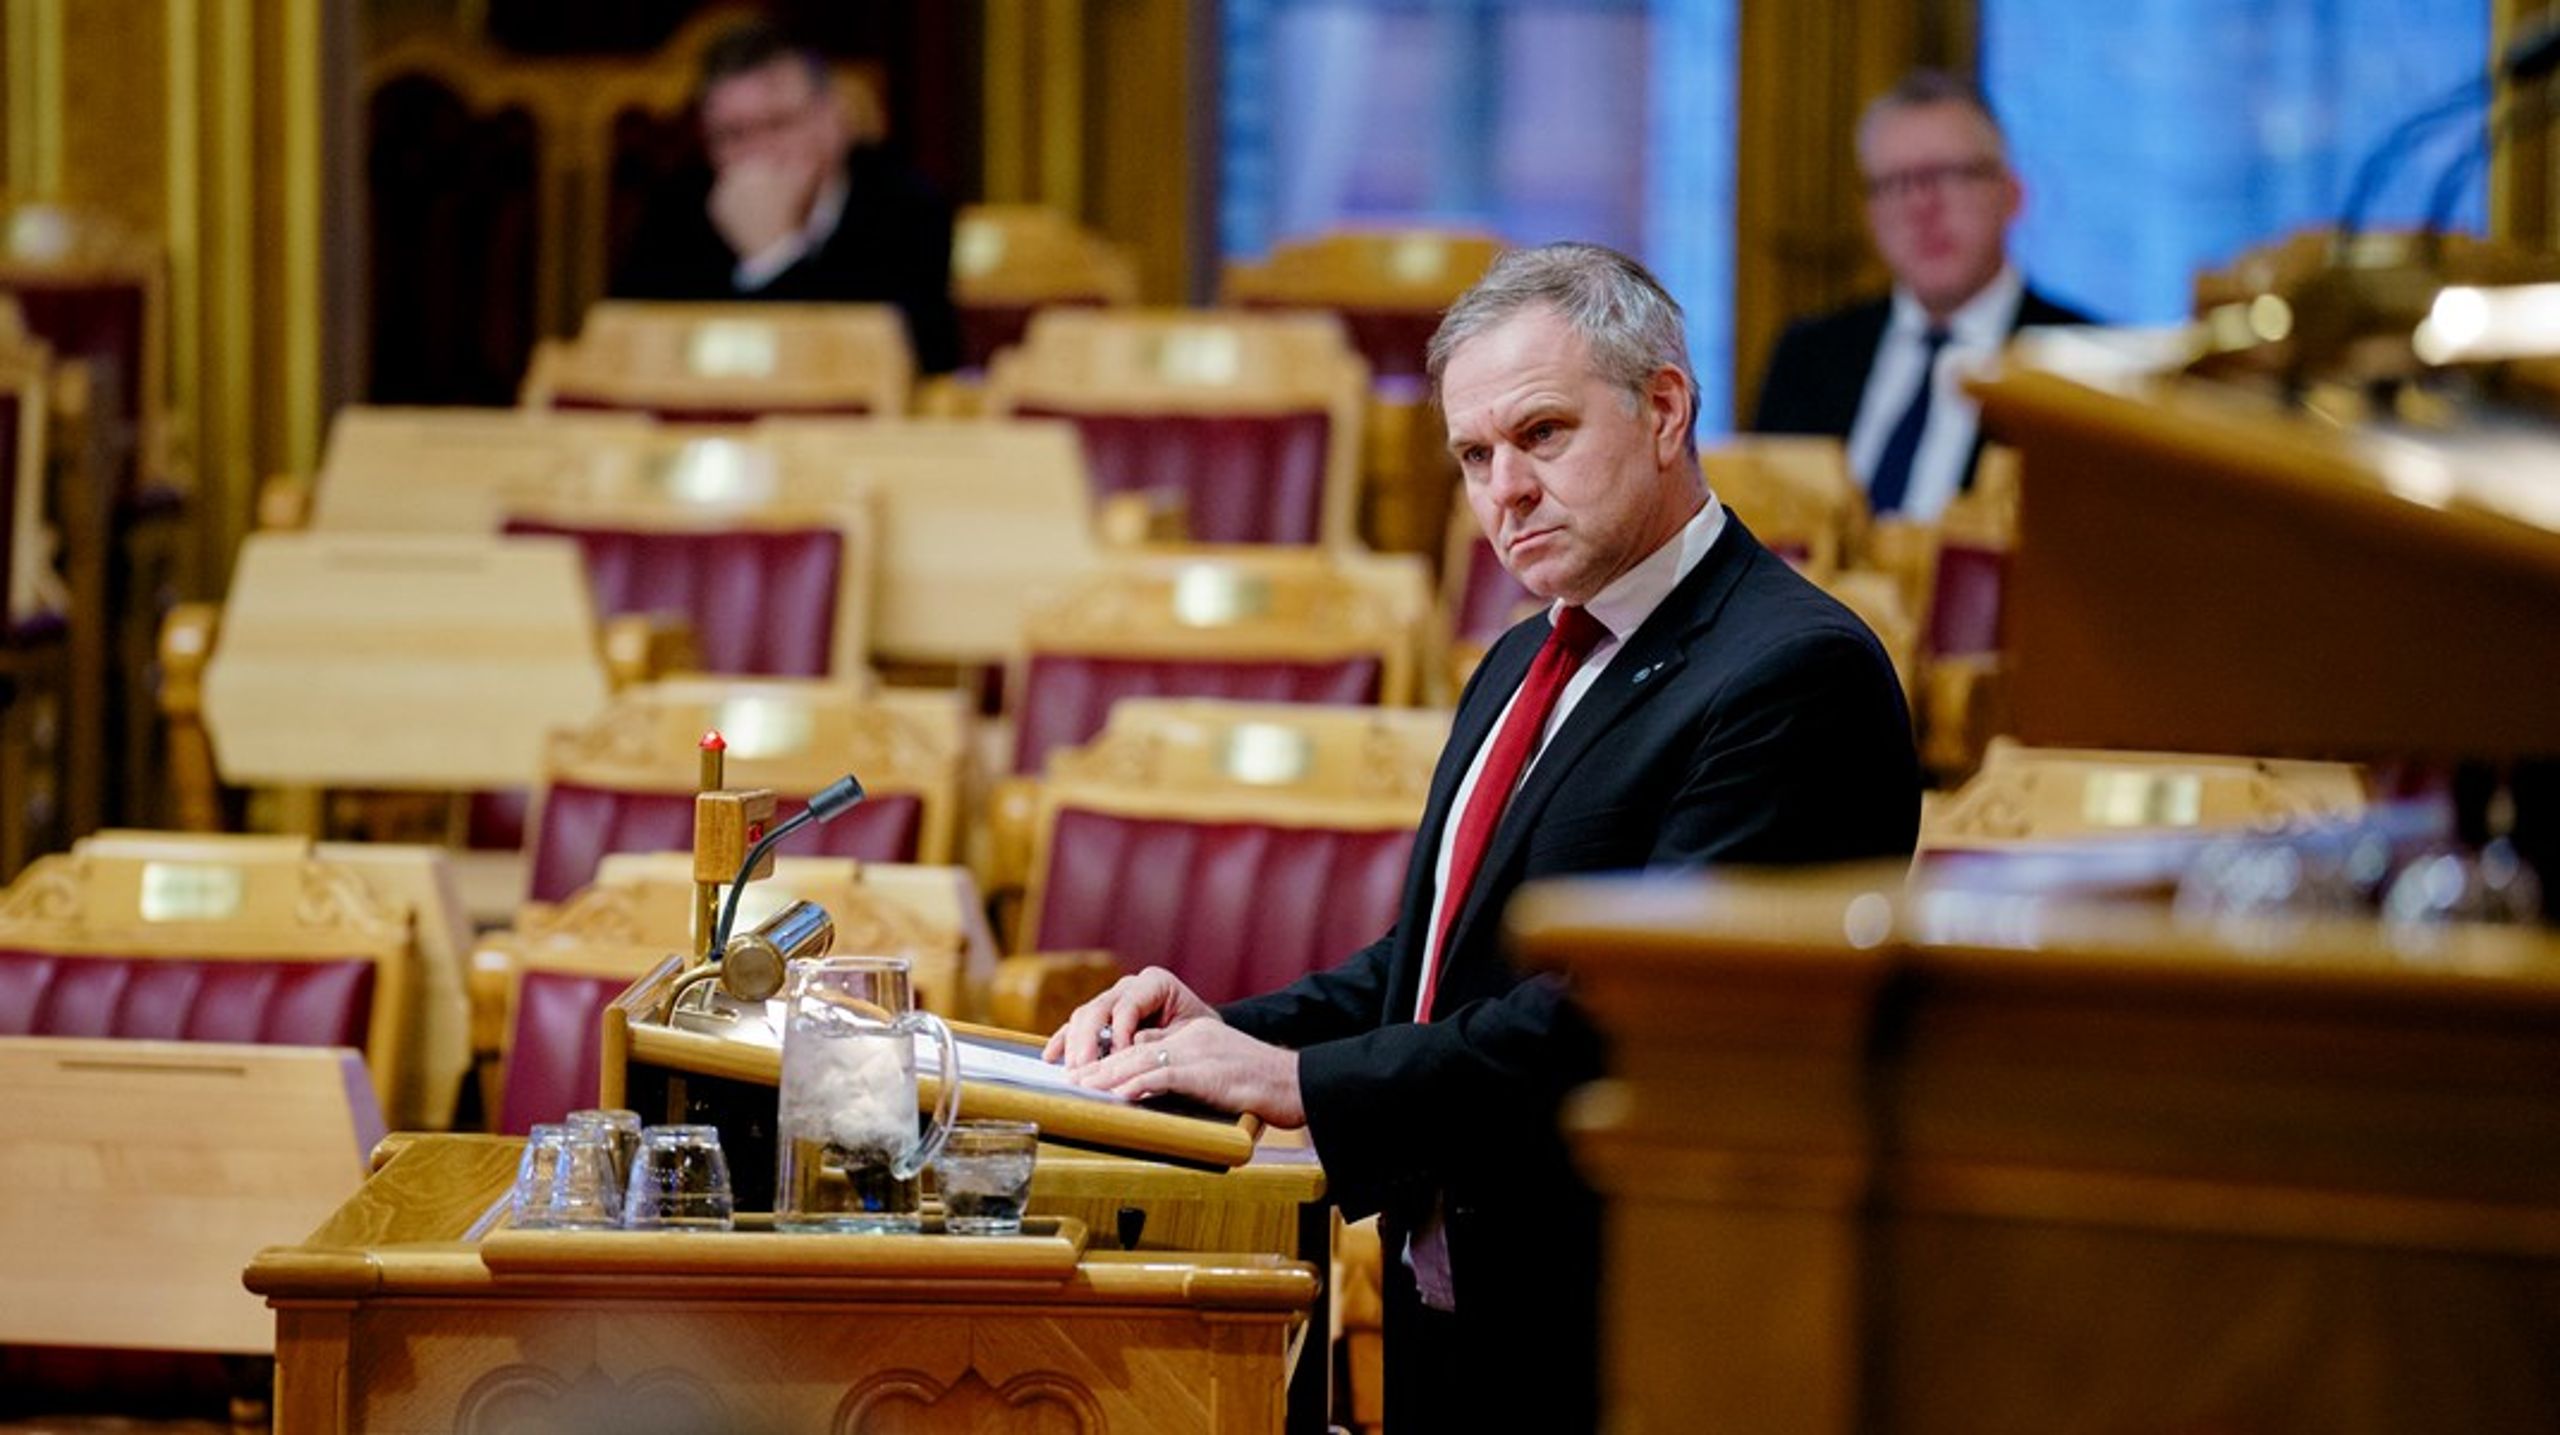 Venstres helsepolitiske talsperson, Alfred Bjørlo, er ikke nådig i sin kritikk av helseministeren. Han mener statsråden må gripe inn overfor Helse Sør-Øst.